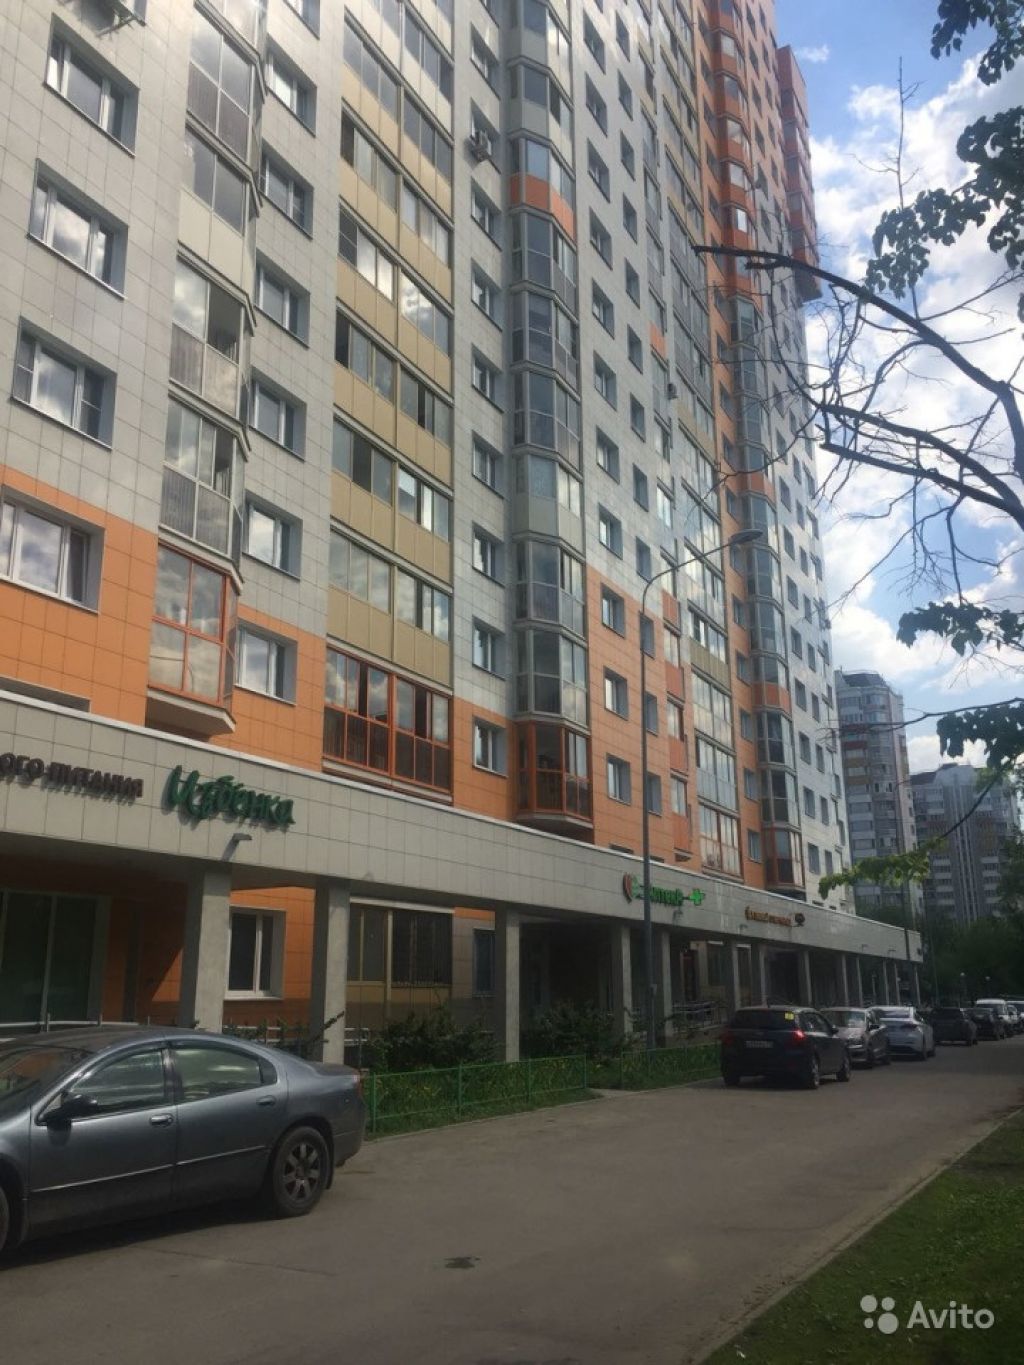 Сдам квартиру 1-к квартира 40 м² на 19 этаже 22-этажного монолитного дома в Москве. Фото 1